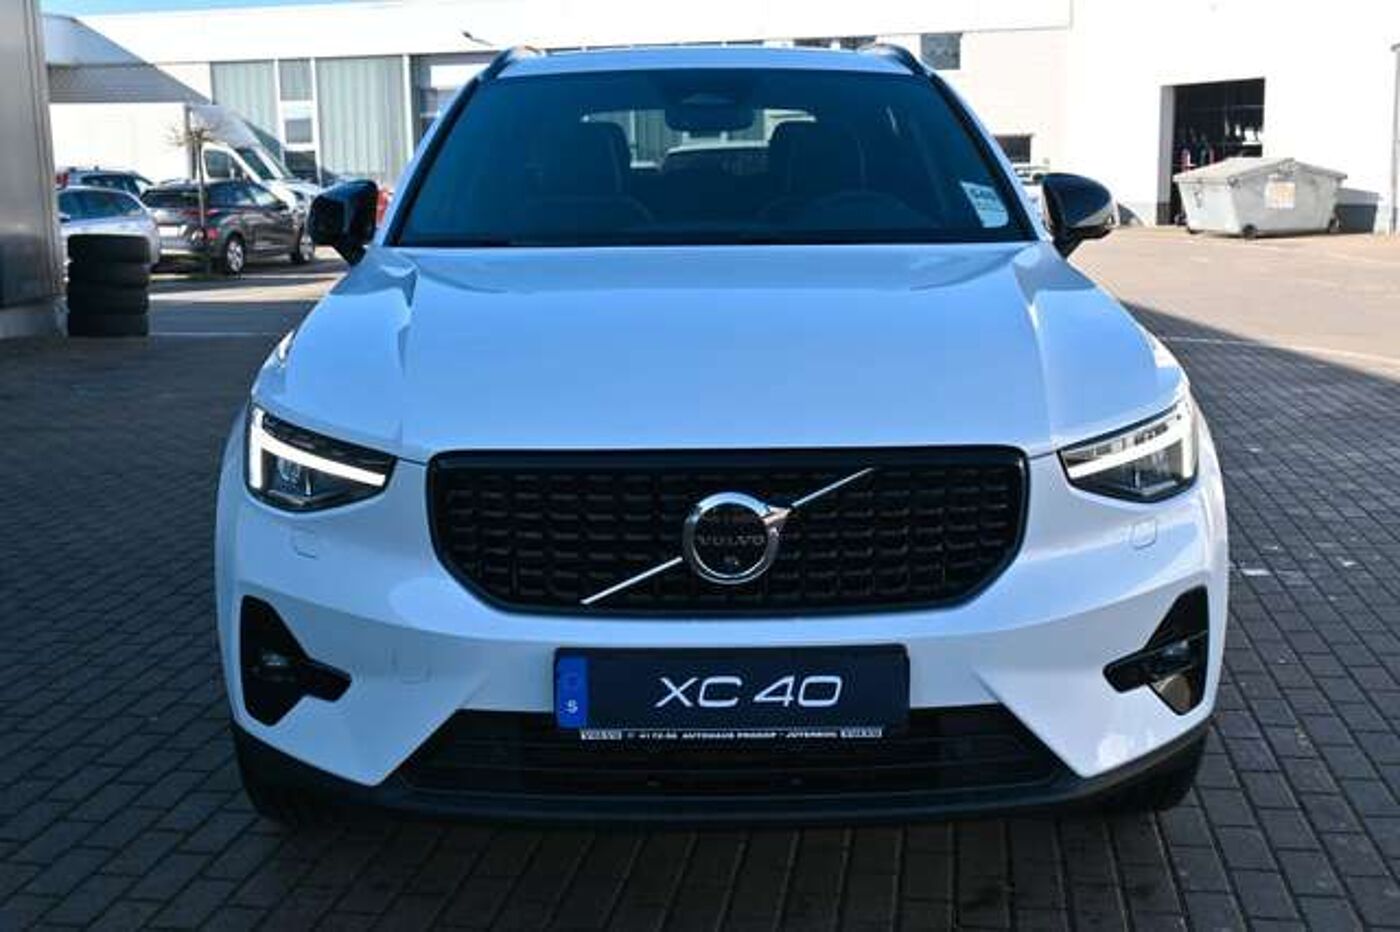 Volvo XC40 B4 B DKG Plus Dark gebraucht kaufen in Rutesheim Preis 36990 eur  - Int.Nr.: 12594 VERKAUFT